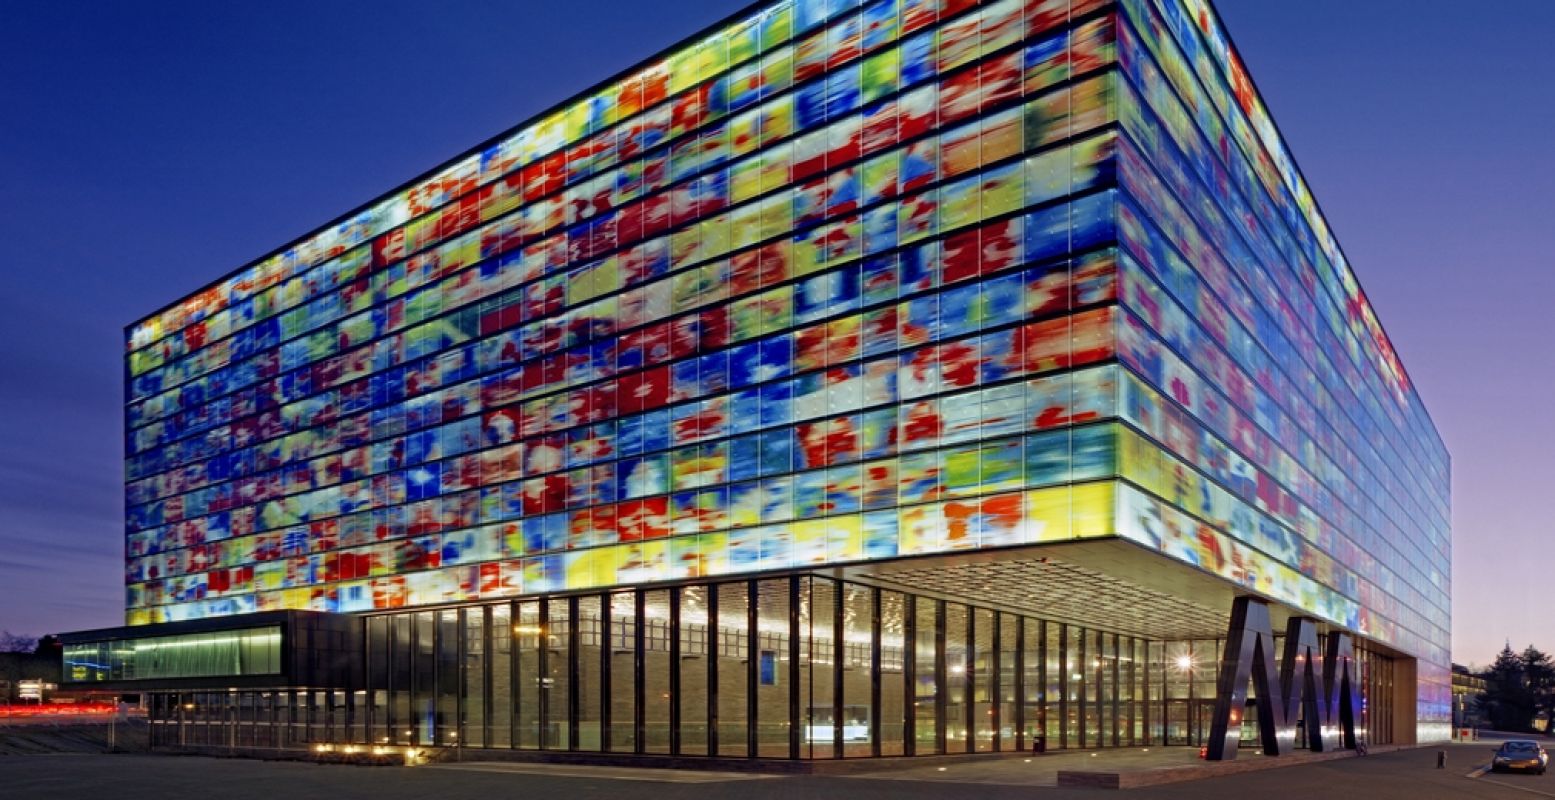 Het opvallende kleurrijke gebouw van Beeld en Geluid, ontworpen door Neutelings Riedijk. Foto: Beeld en Geluid © Daria Scagliola en Stijn Brakkee